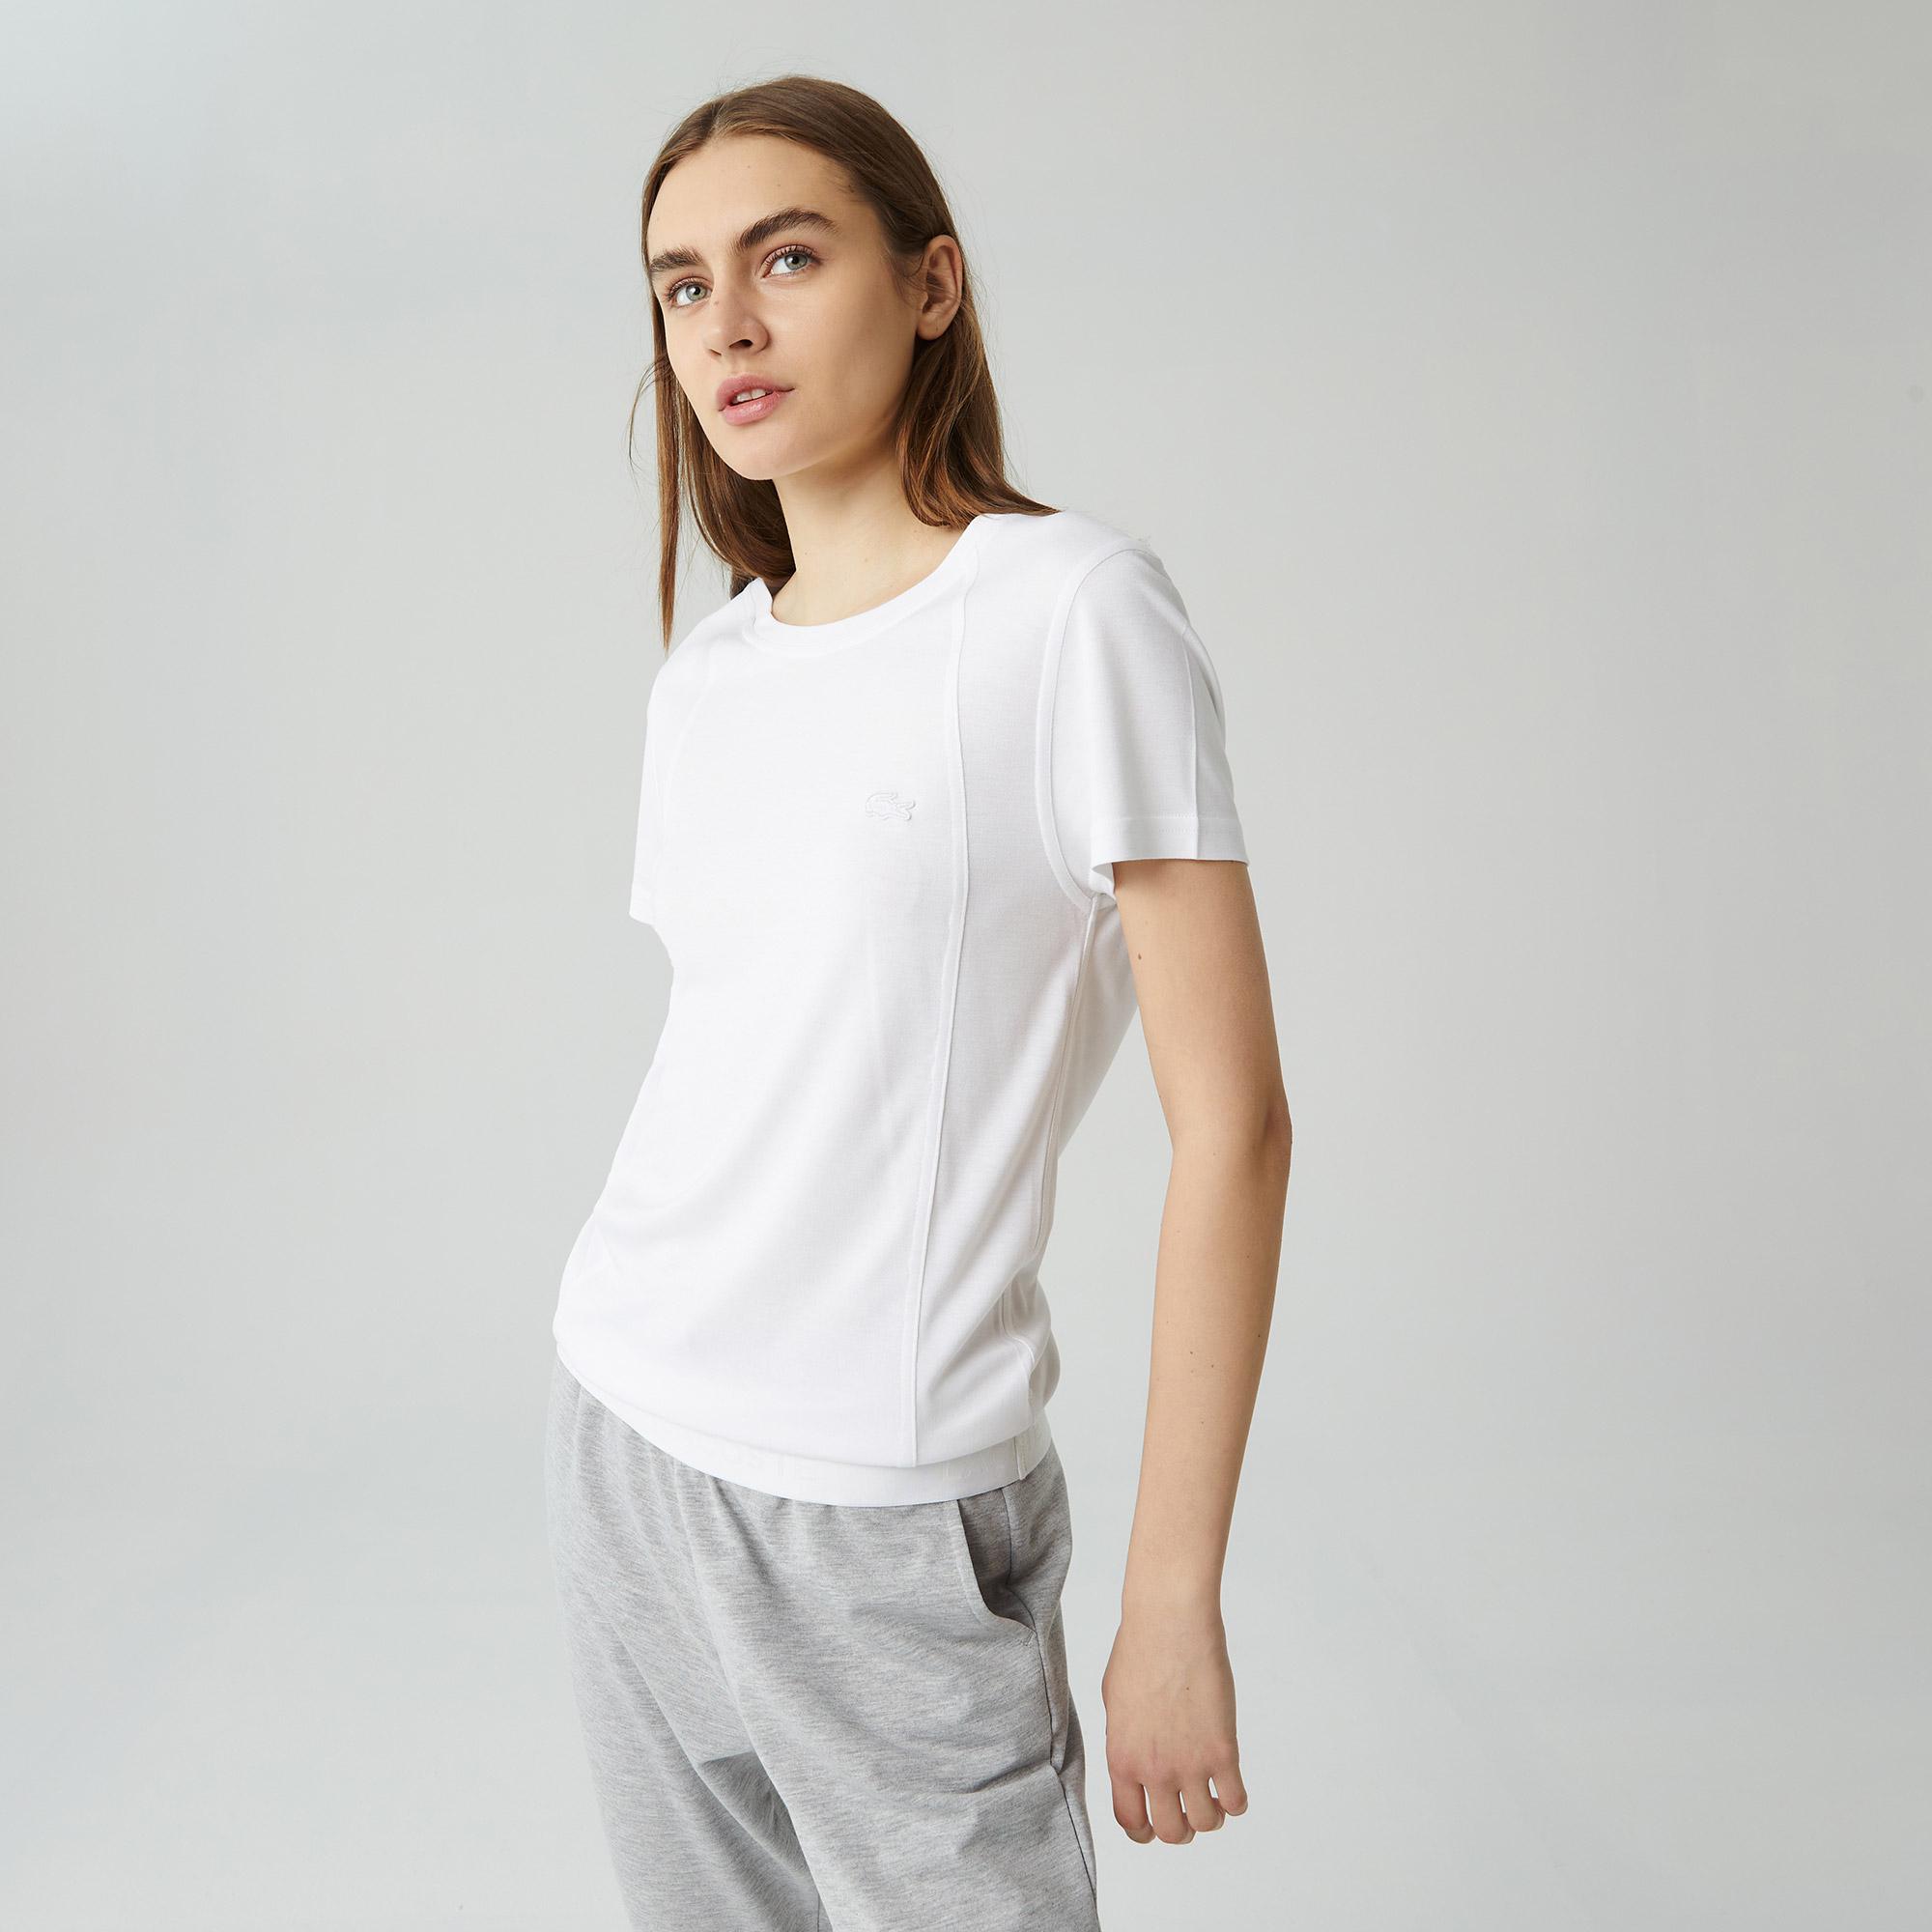 Lacoste Kadın Relaxed Fit Kayık Yaka Beyaz T-shirt. 6